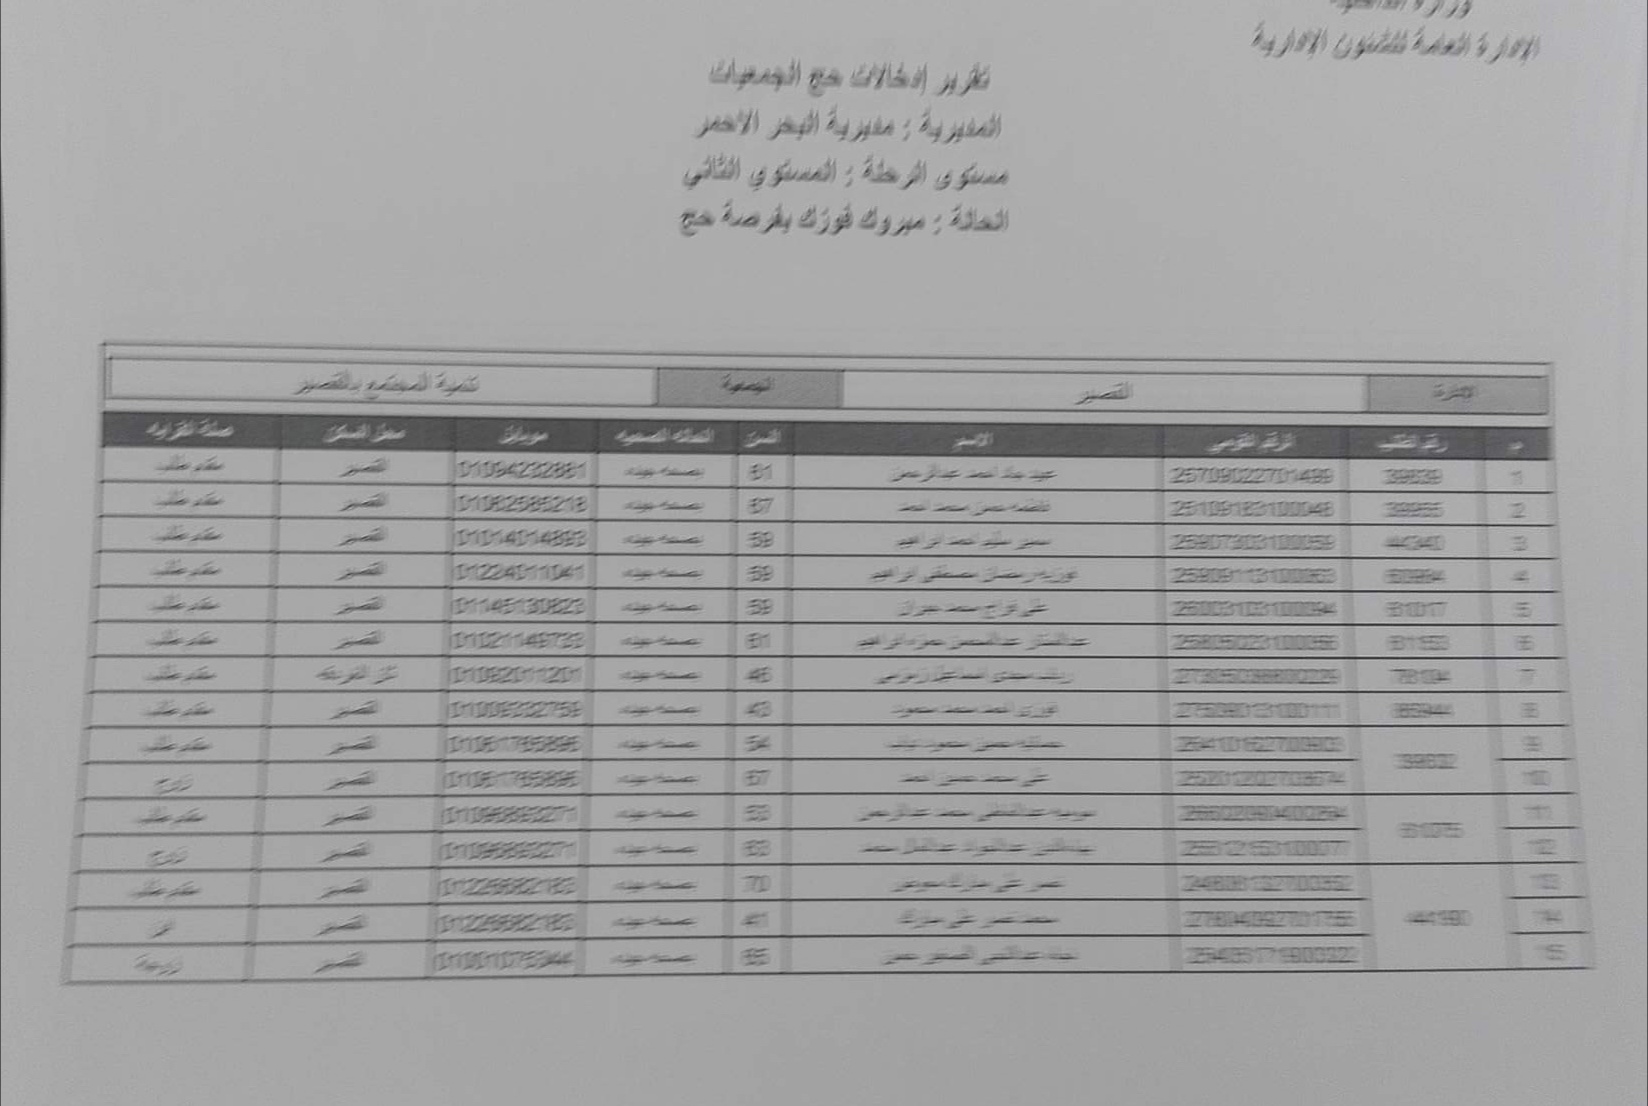  أسماء الفائزين بقرعة حج الجمعيات فى محافظة البحر الأحمر (5)